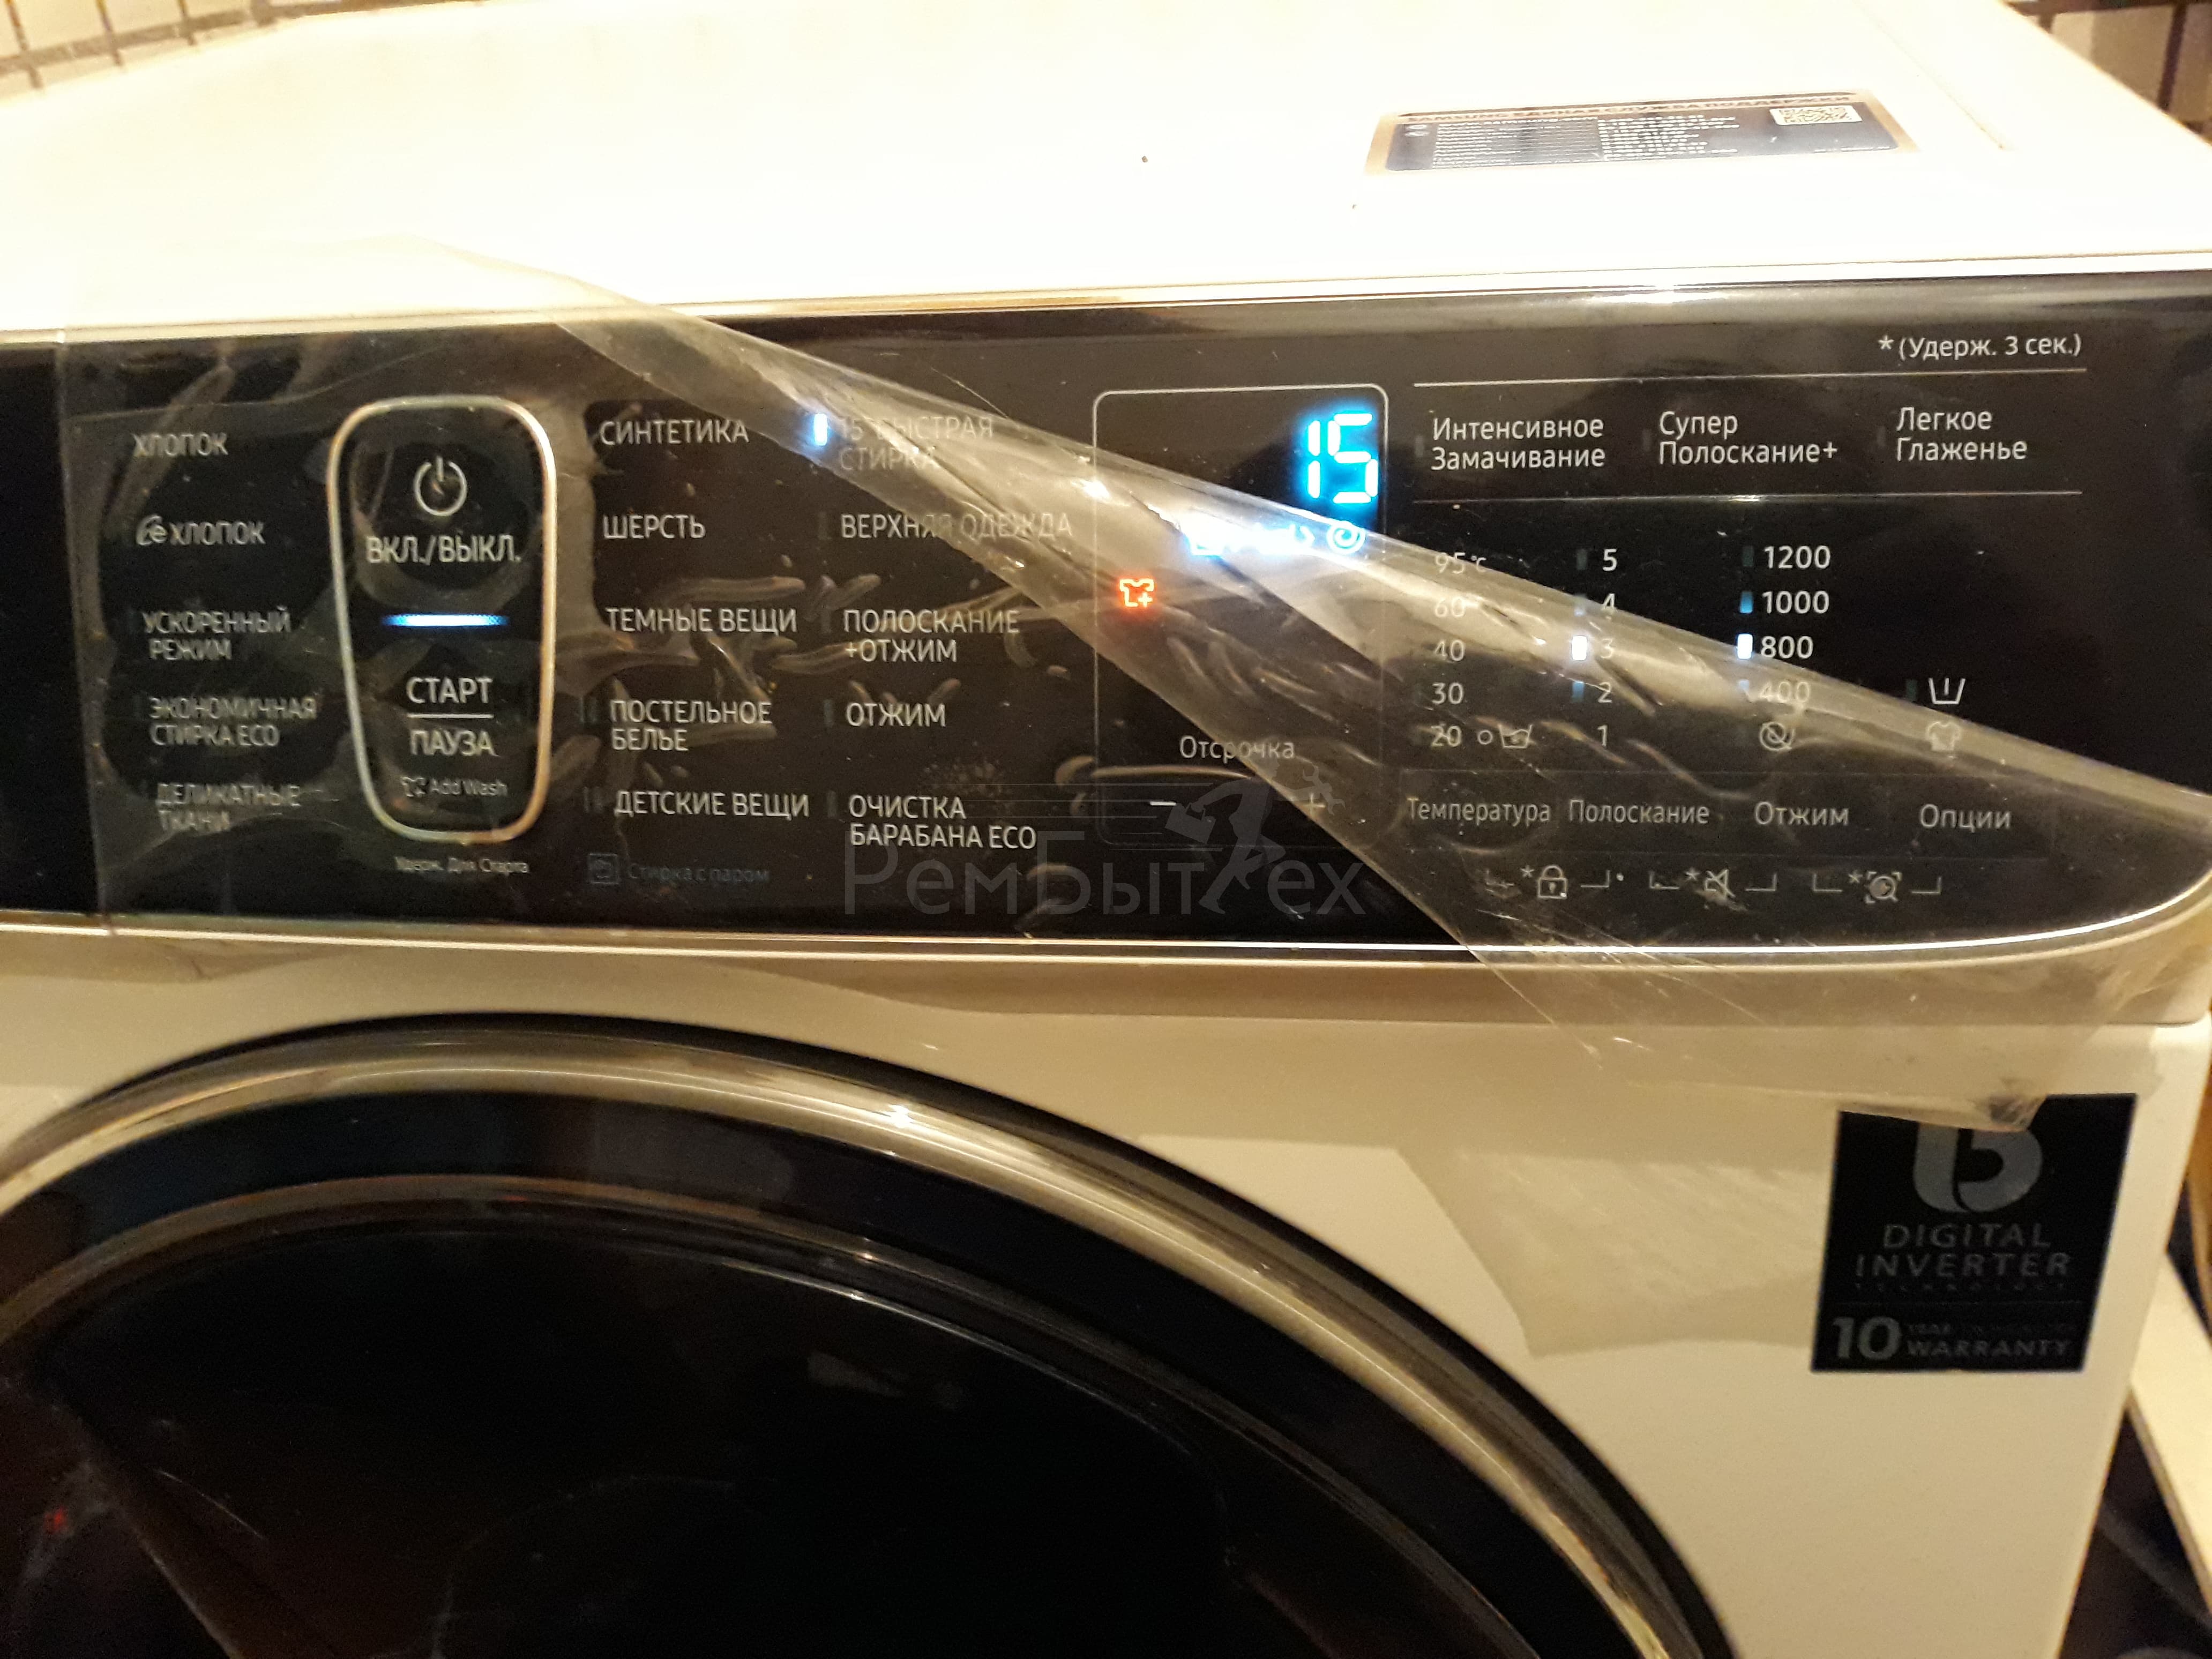 Ошибка 2Н в стиральной машине Самсунг - что делать ...